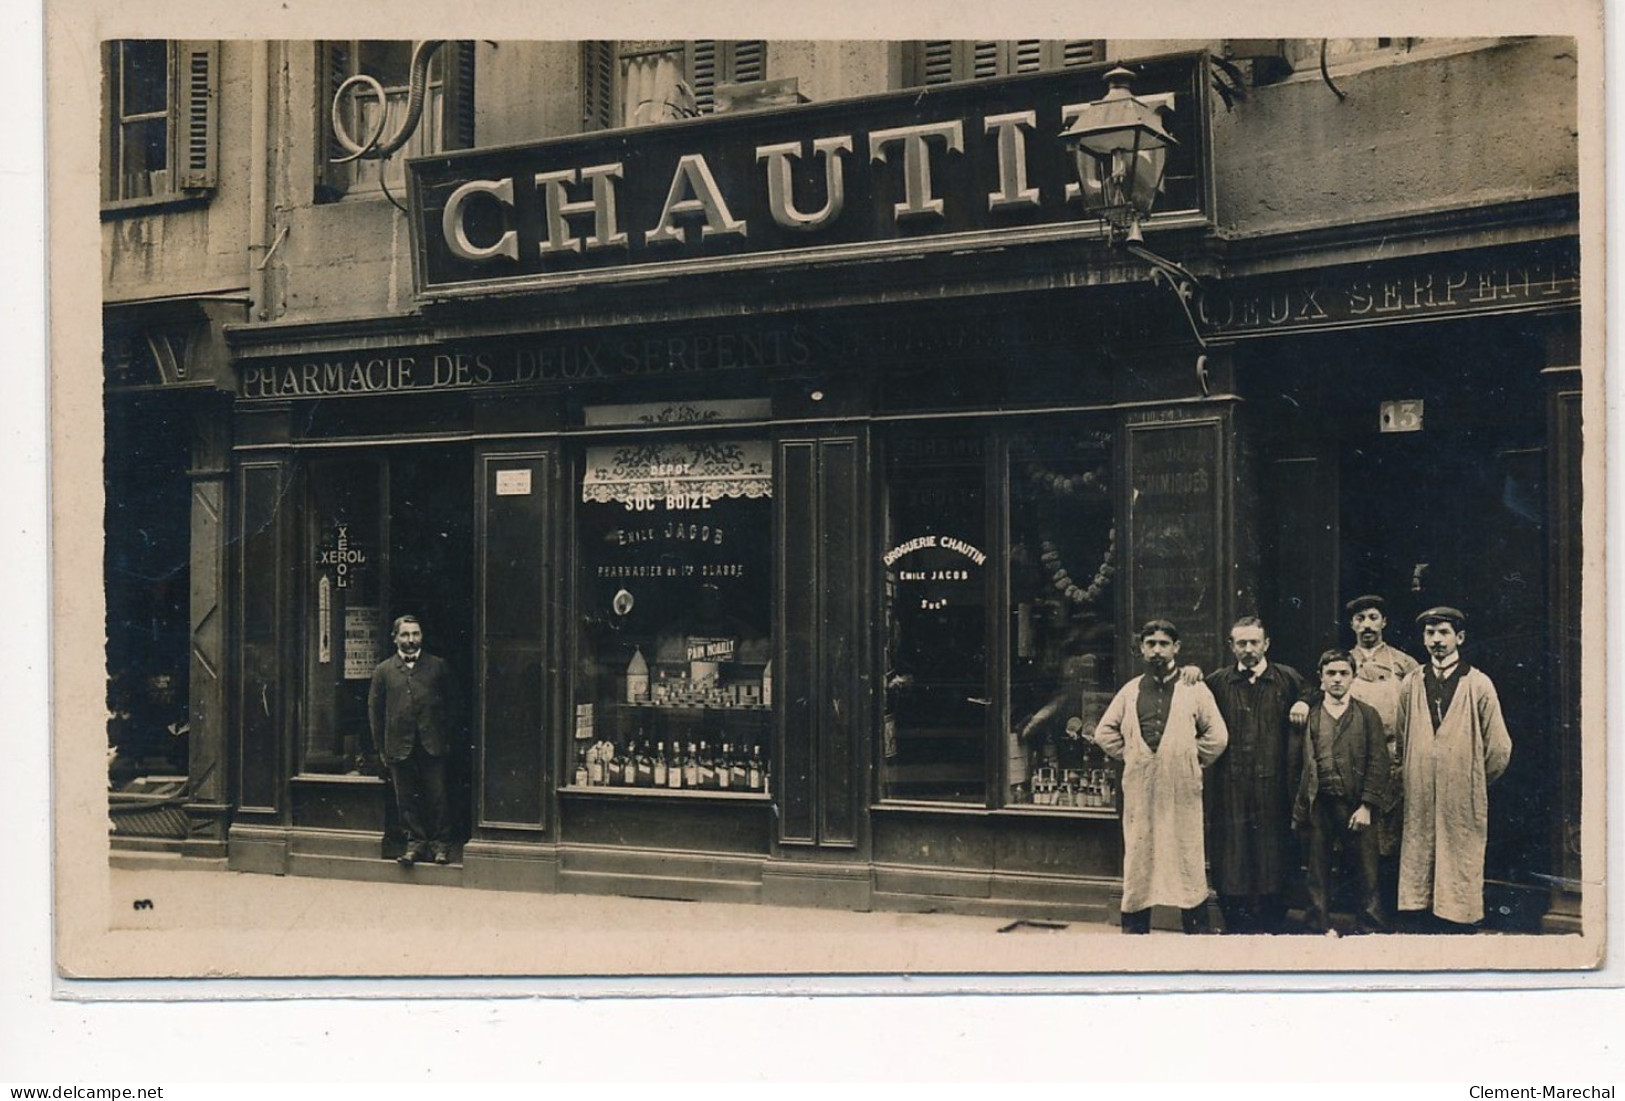 SAINT ETIENNE : 13 Rue Du Grand Moulin - Pharmacie Des Deux Sepents, Chautin - Tres Bon Etat - Saint Etienne